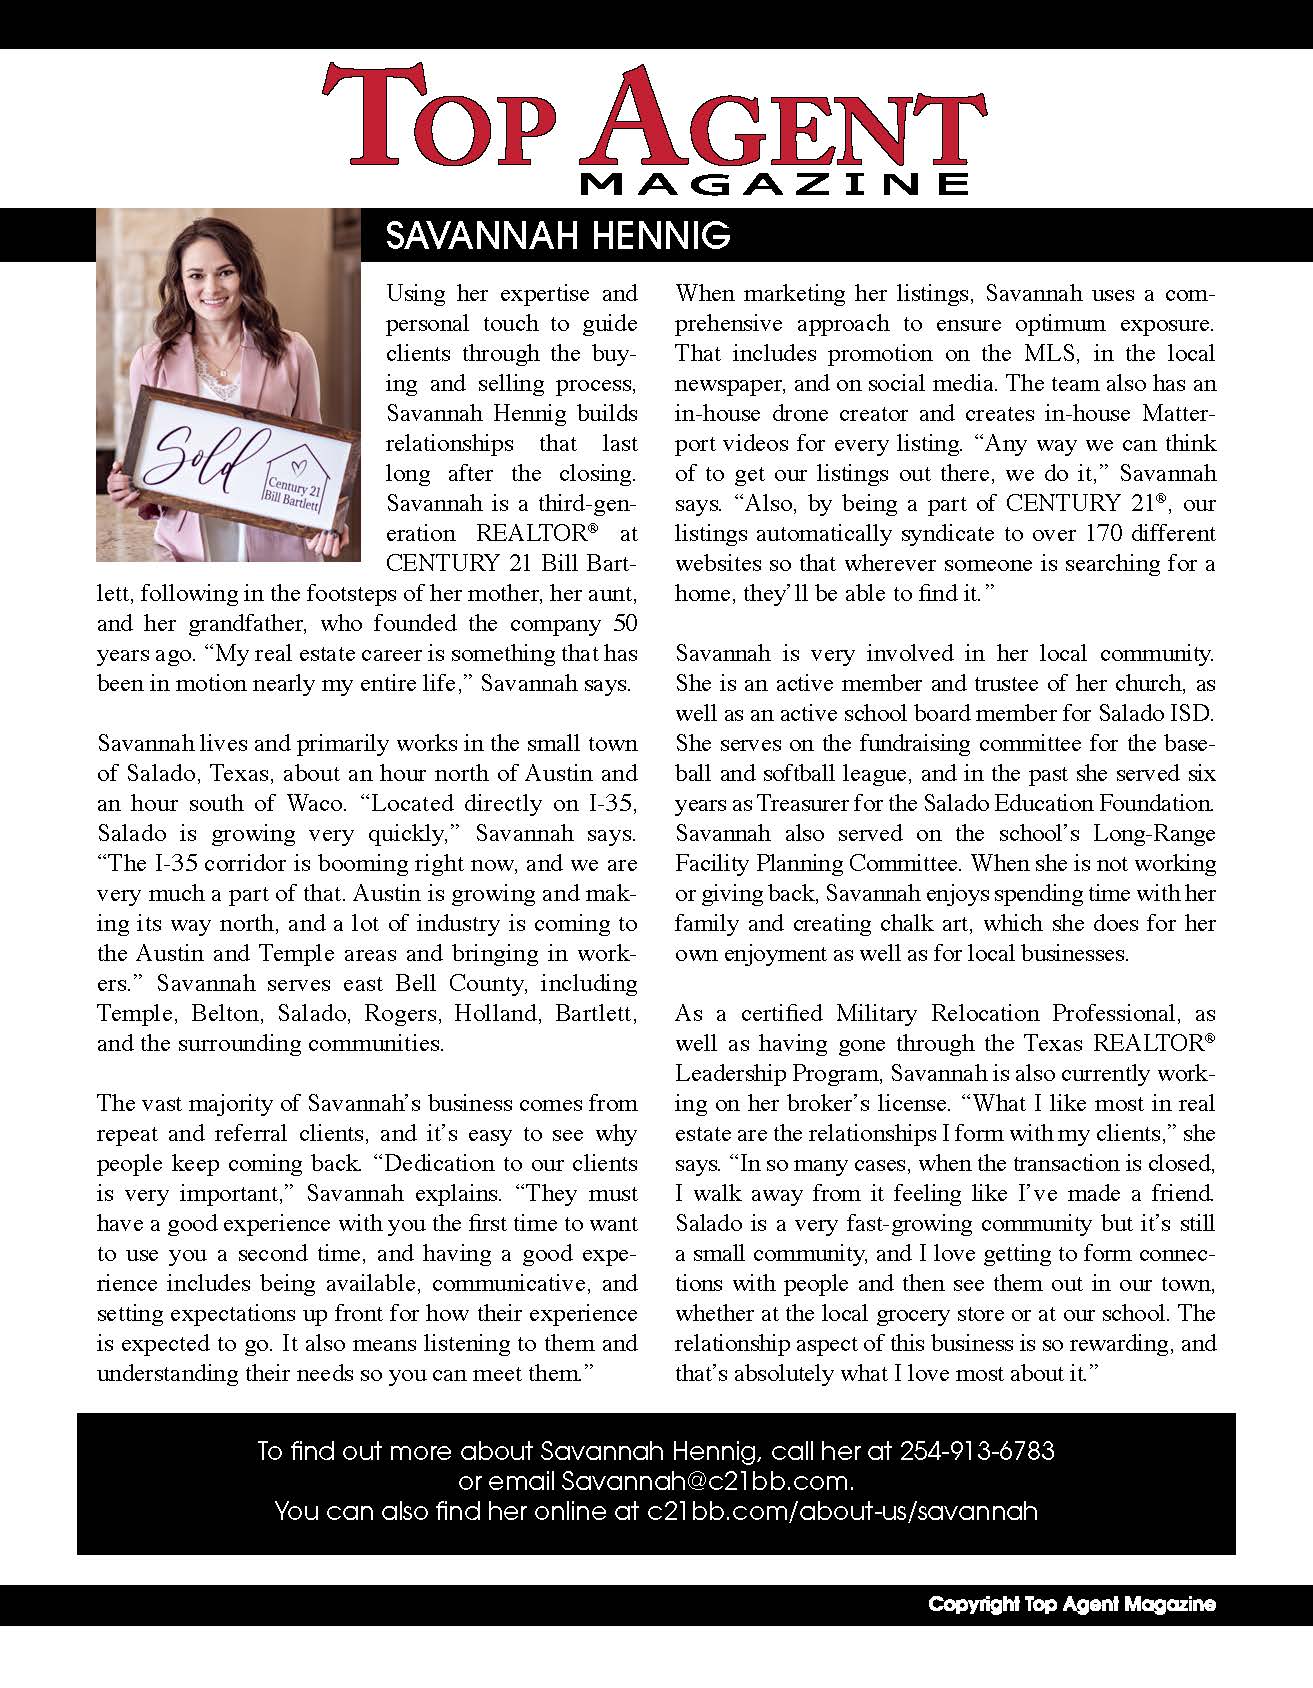 Savannah Hennig featured in Top Agent Magazine